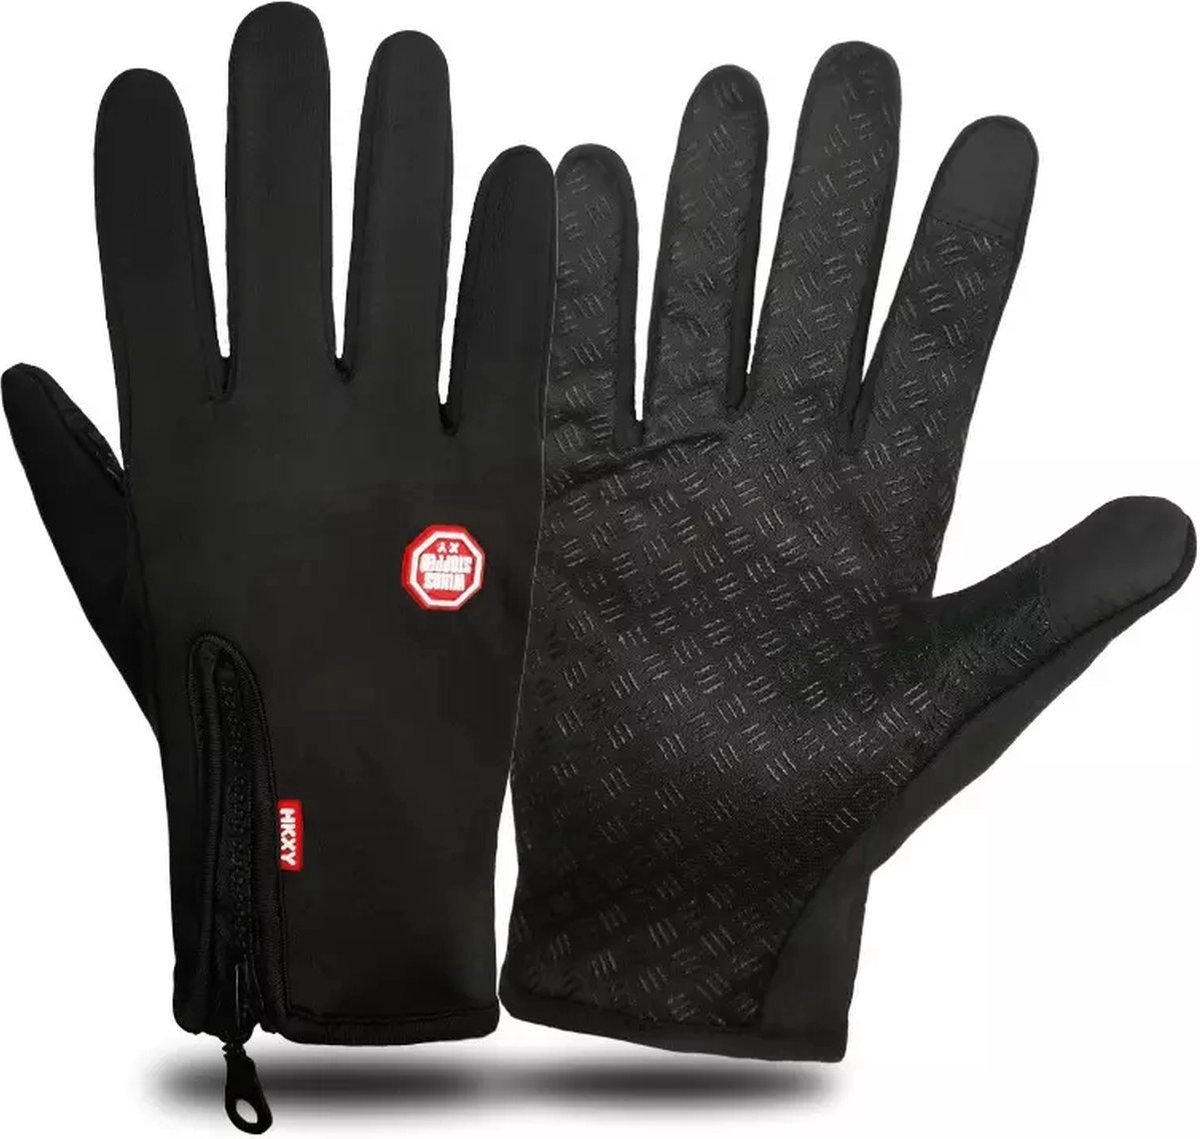 *** Handschoenen Warm Tech - Touchscreen - Waterdicht - Fleece - Unisex - Zwart - Maat S - van Heble® ***